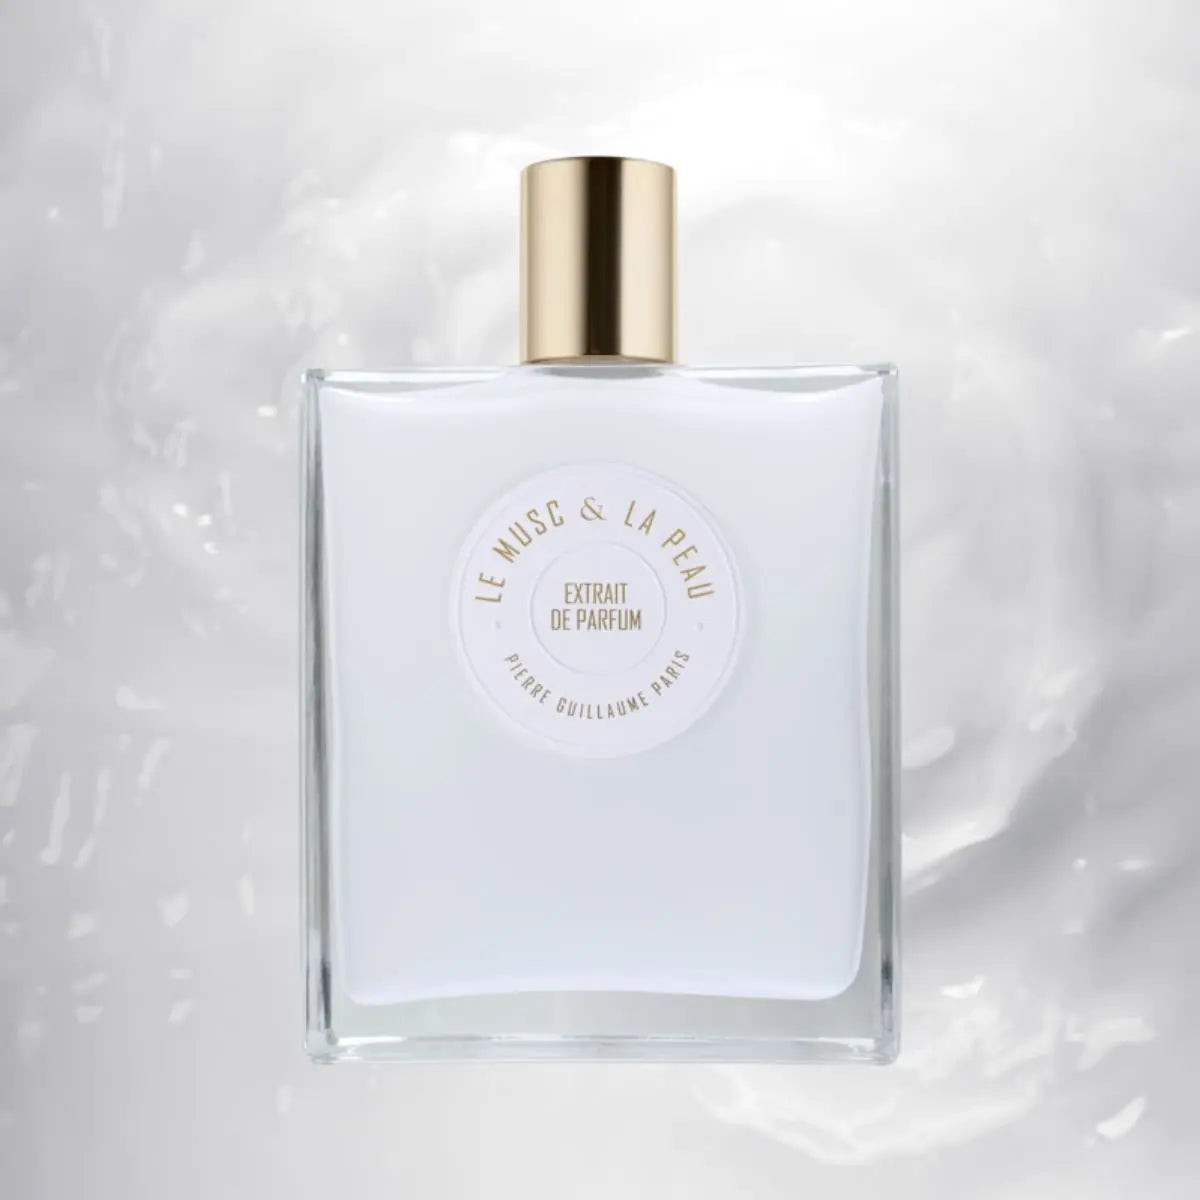 Pierre Guillaume Le Musc &amp; La Peau Extraits de Parfum